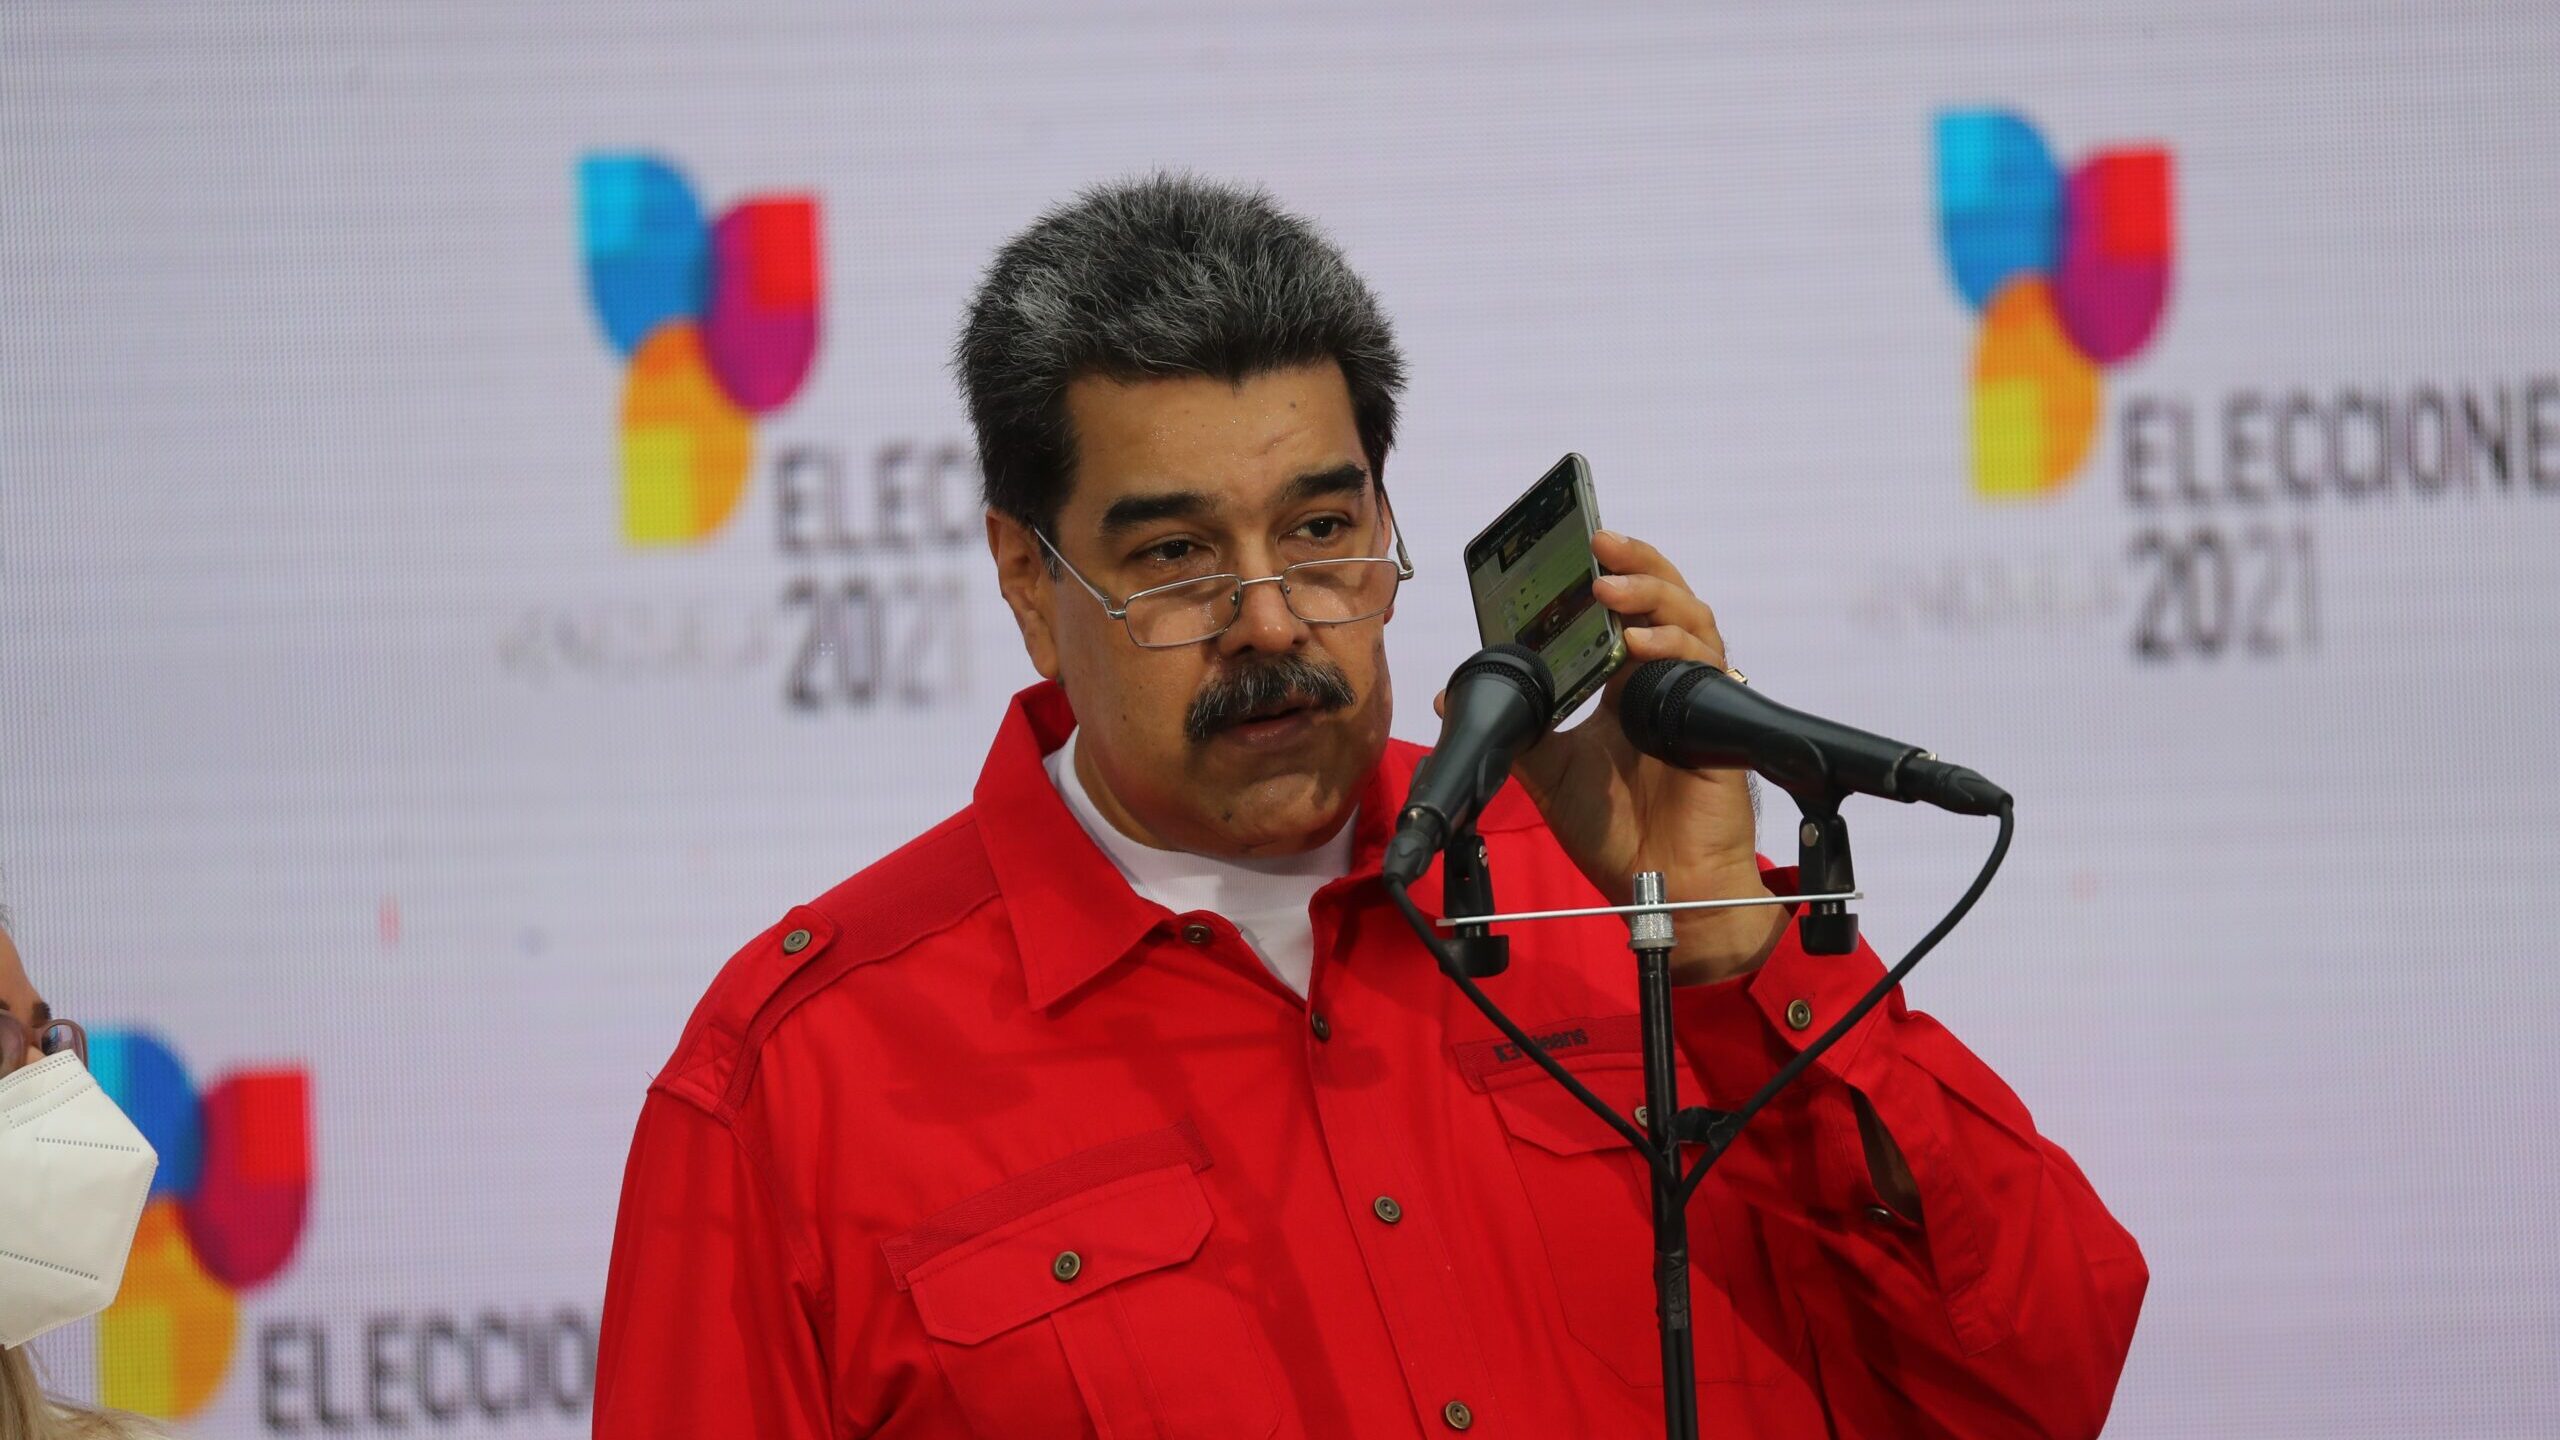 El hijo de Maduro emprende acciones legales en España contra una destacada activista venezolana